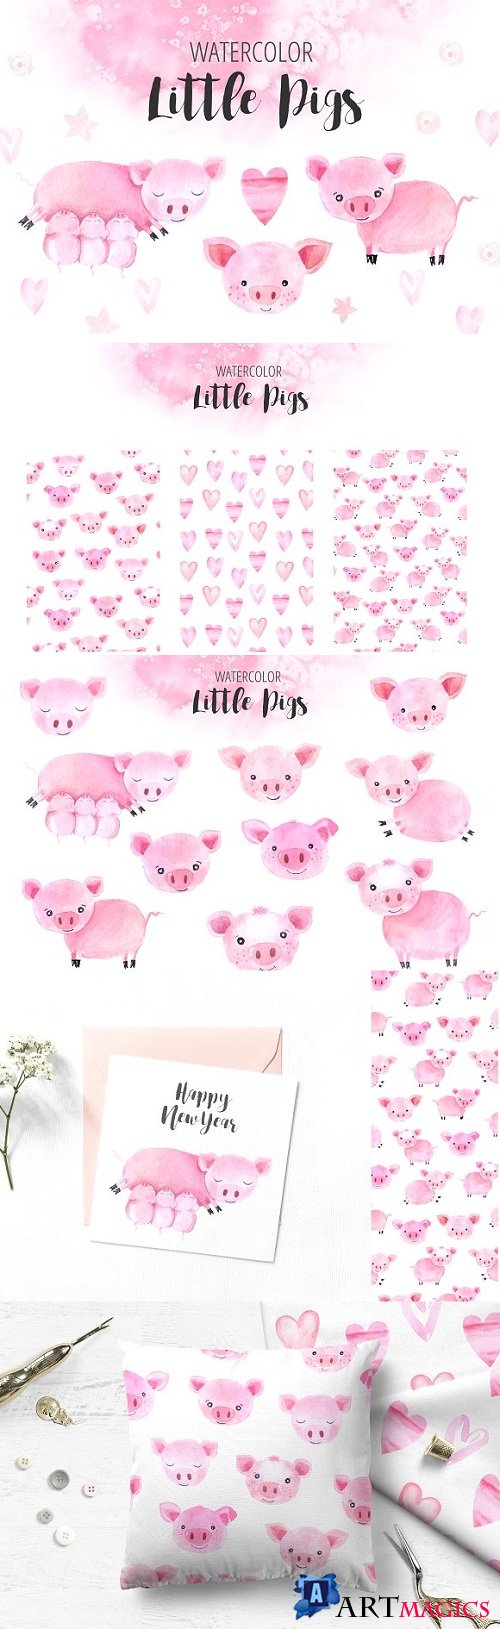 Watercolor Little Pigs Set 3228509